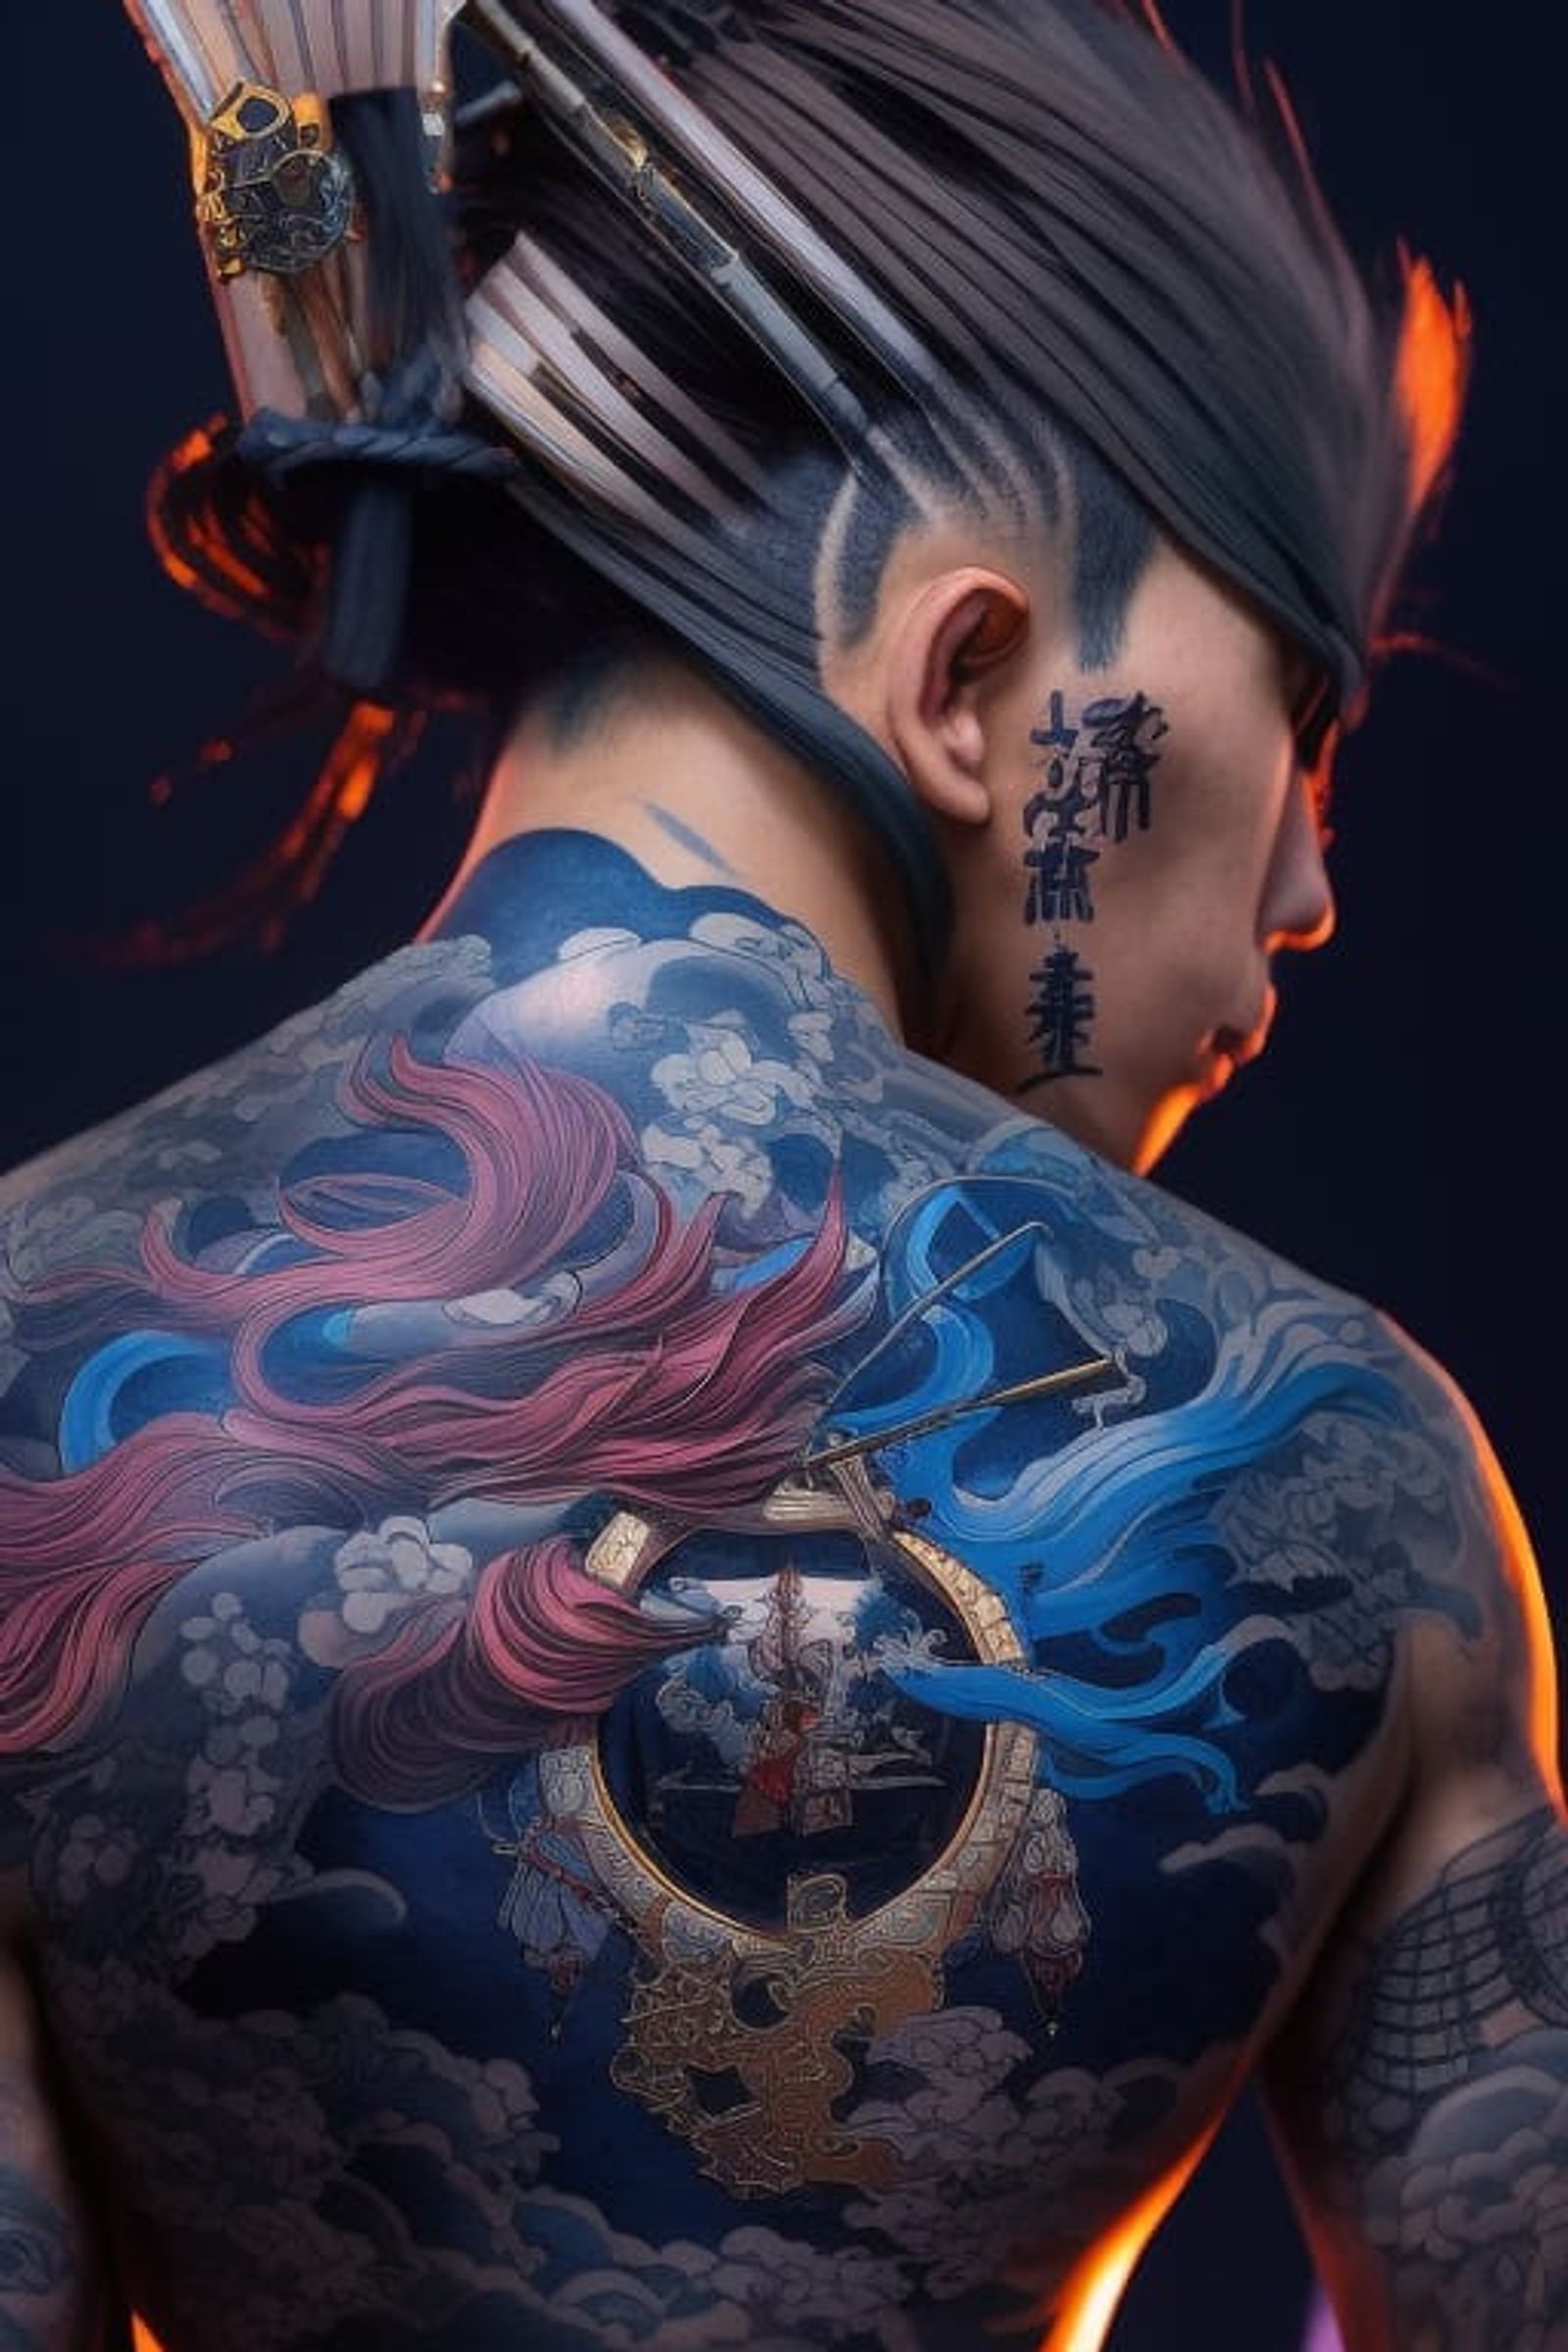 incredible tattoo